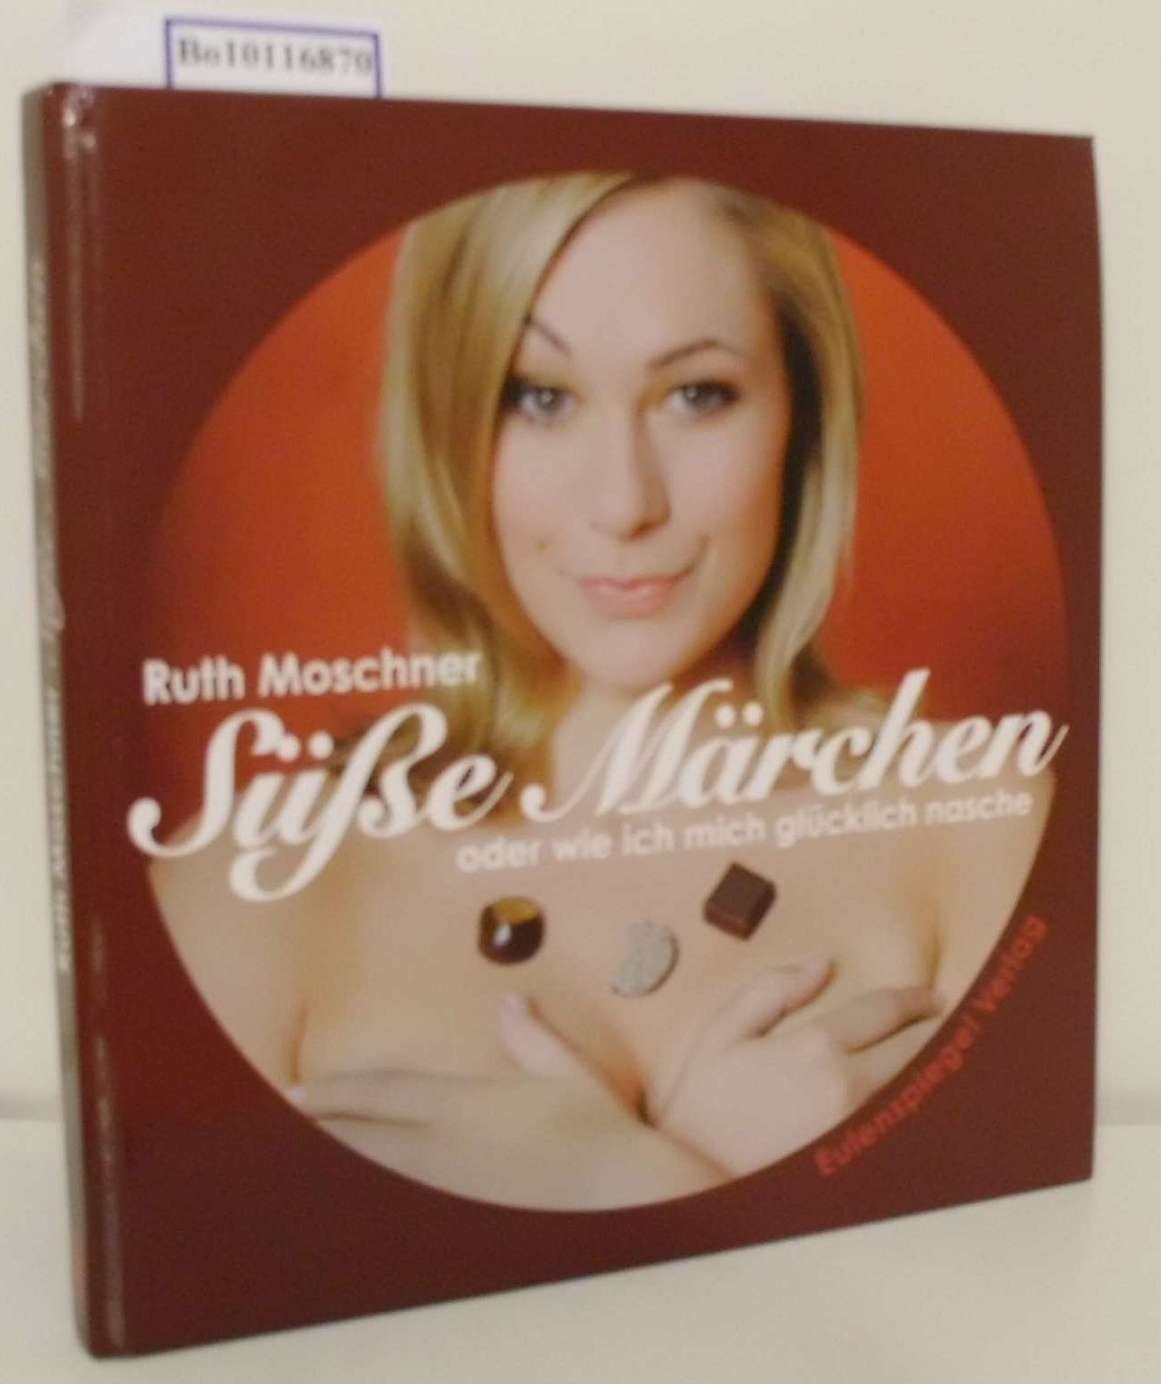 Susse Marchen Oder Wie Ich Mich Glucklich Nasche Ruth Moschner Moschner Ruth Buch Signiert Kaufen A02kip2h01zzl